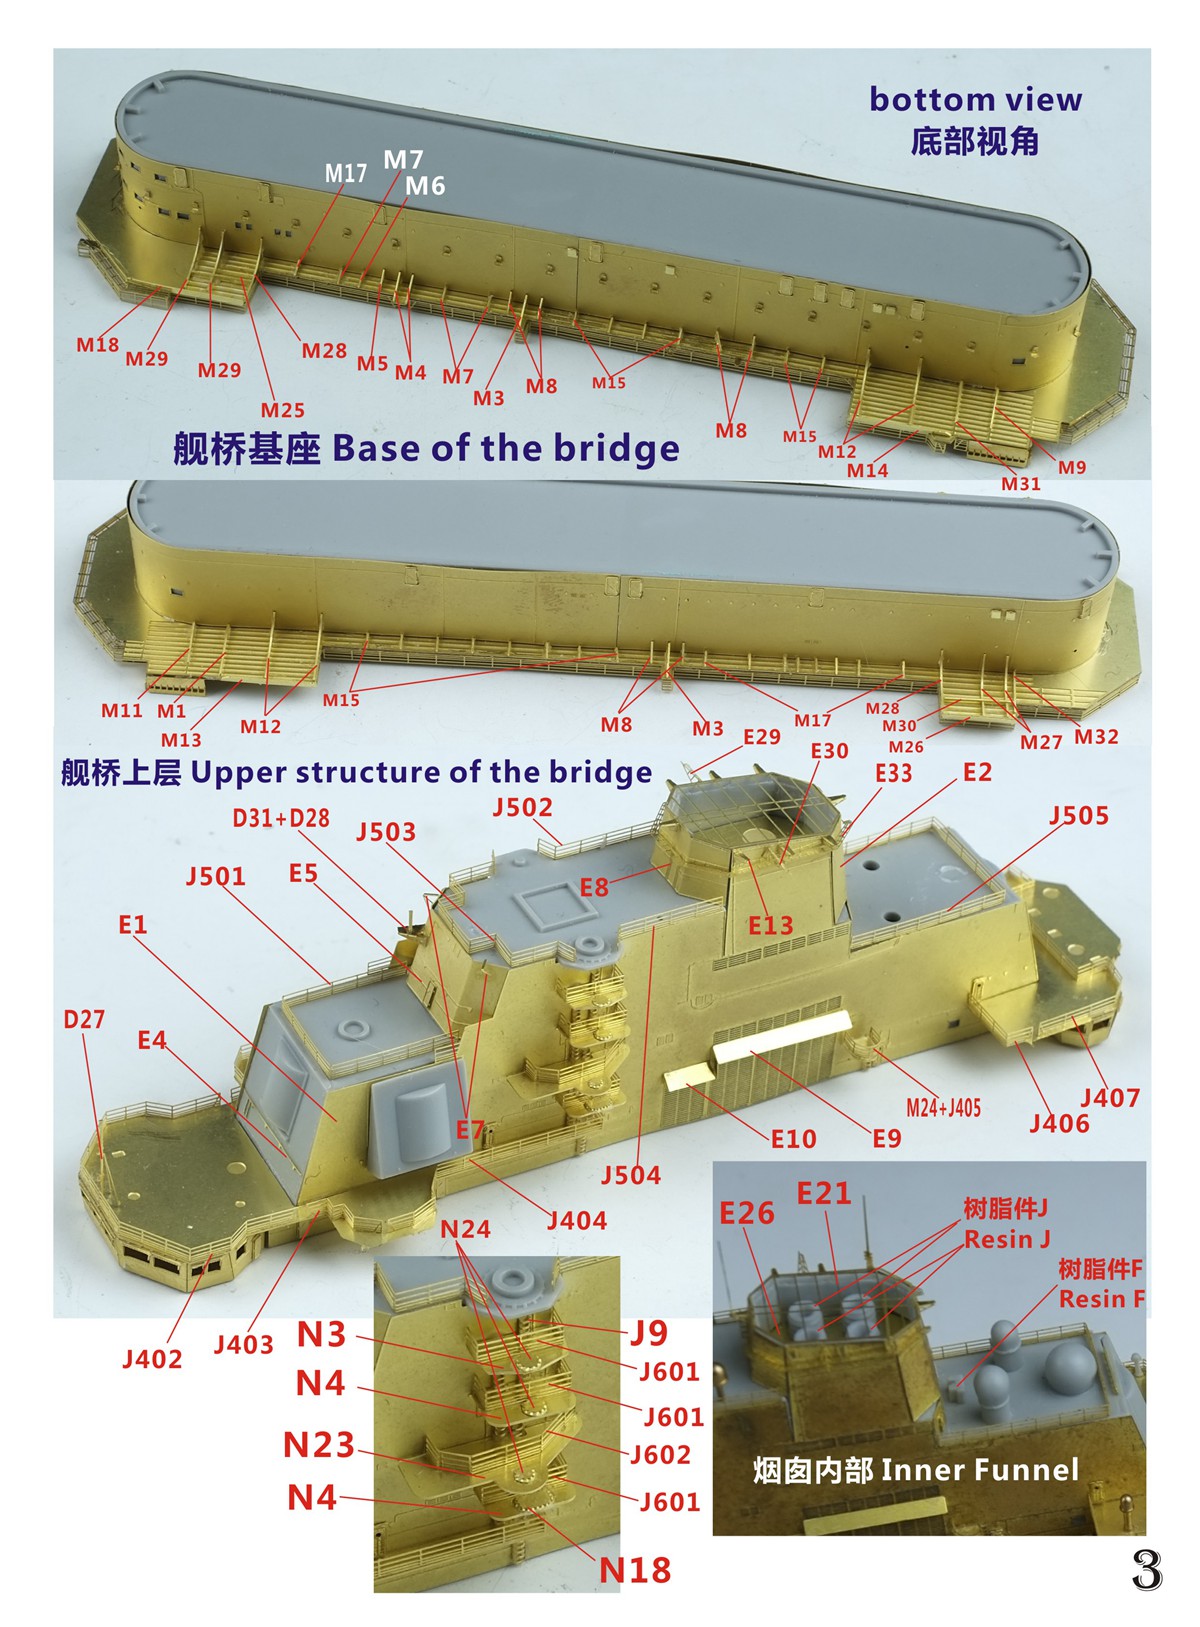 1/700 现代中国海军辽宁号航空母舰2019年状态超级改造套件(配小号手06703) - 点击图像关闭